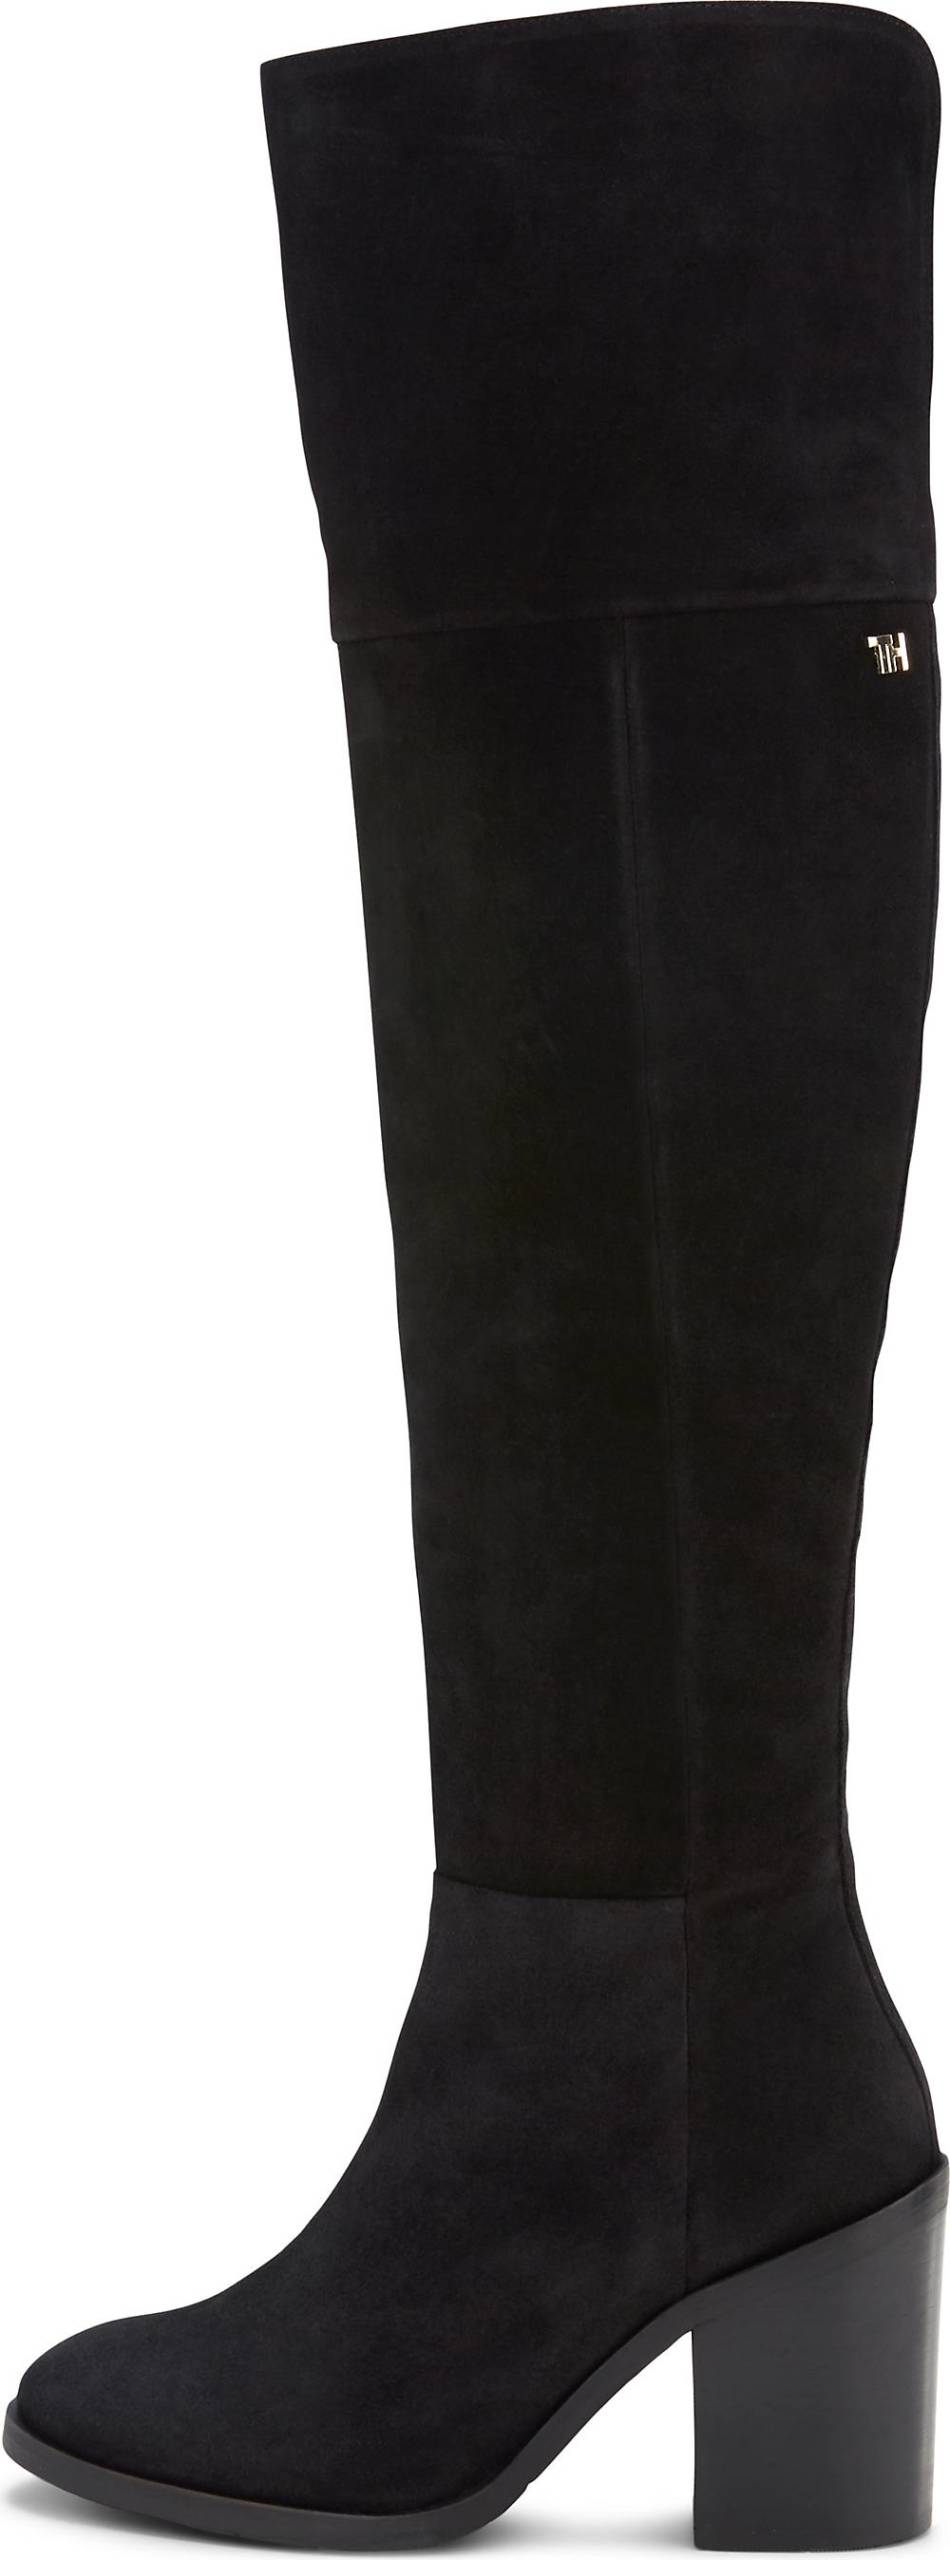 TOMMY HILFIGER, Overknee-Stiefel Modern Tommy in schwarz, Stiefel für Damen